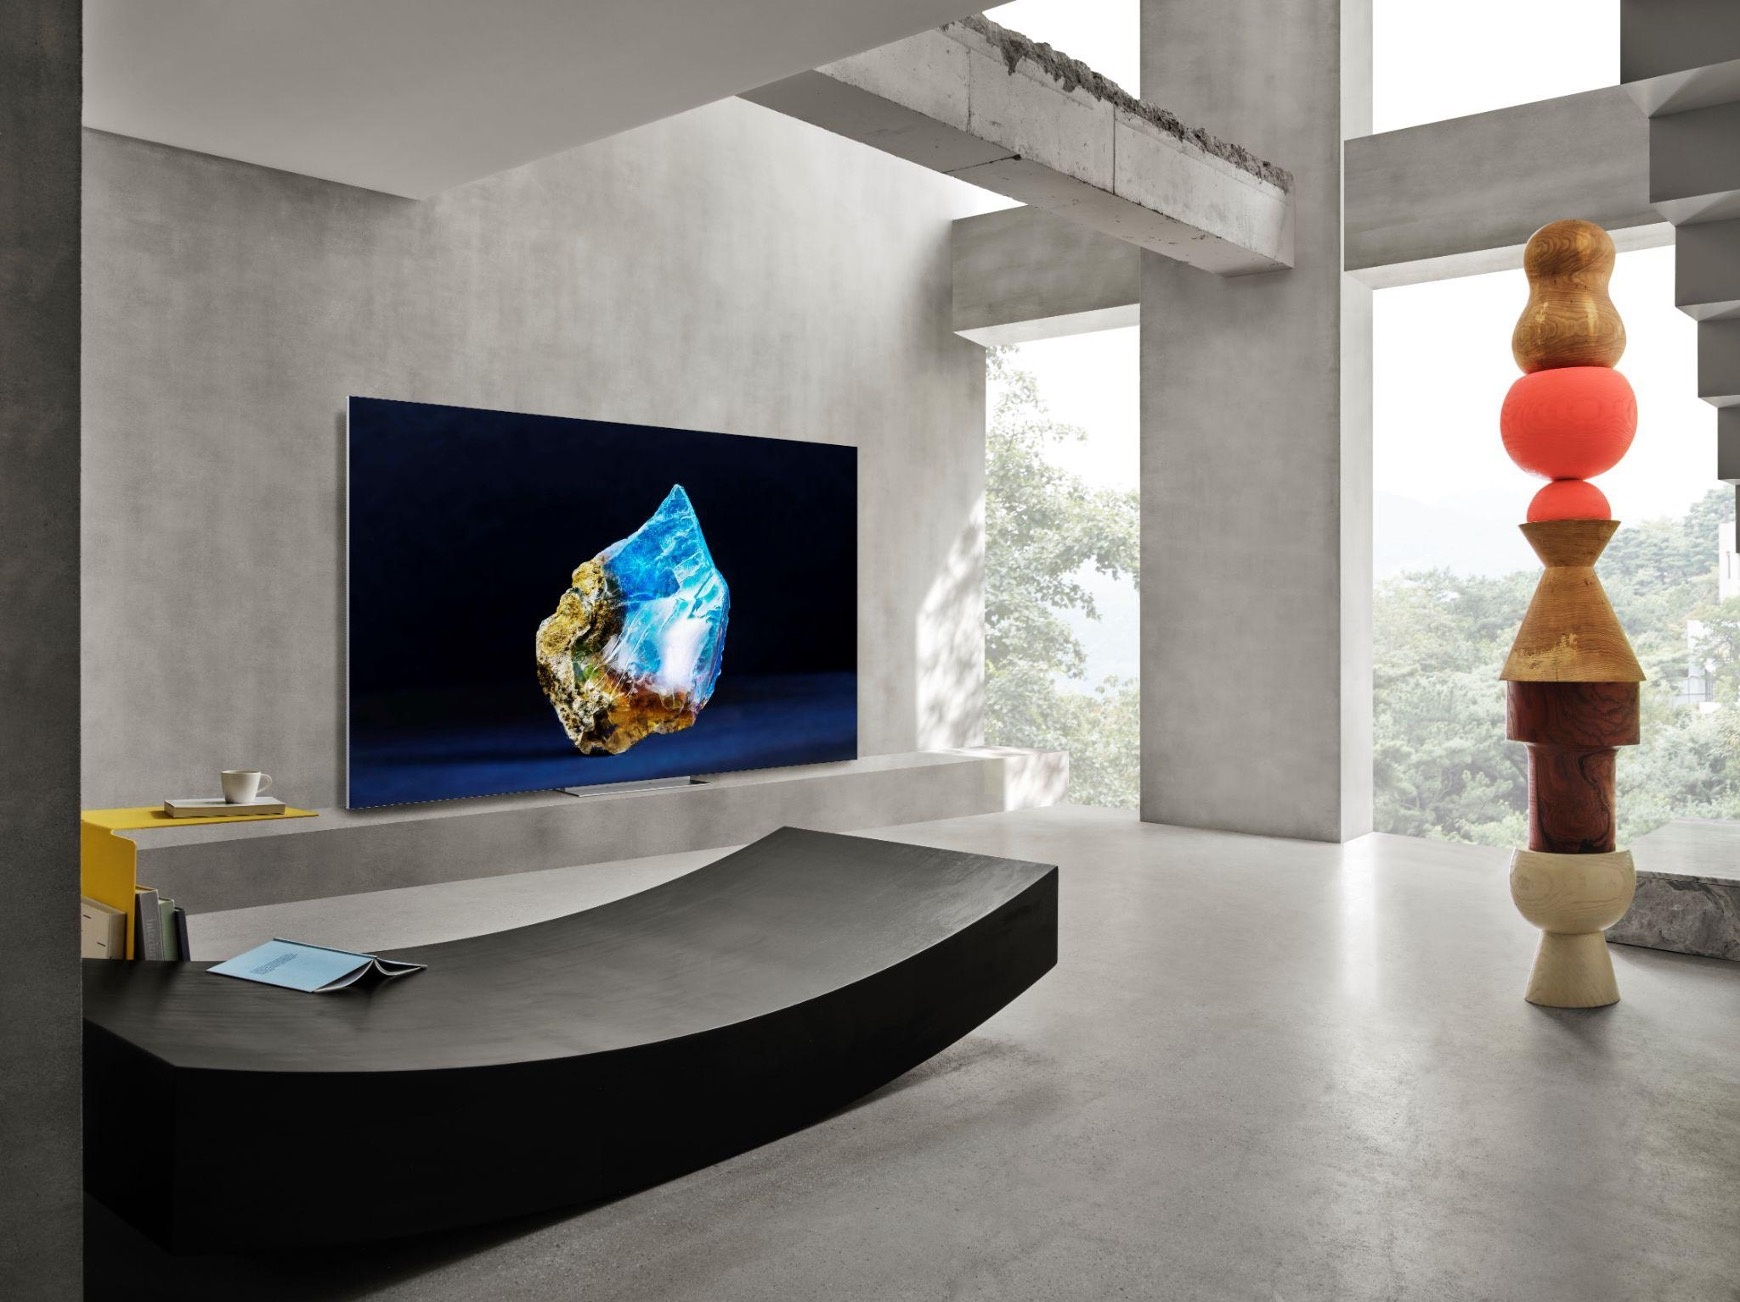 Samsung khẳng định sức mạnh dẫn đầu với TV cao cấp kết hợp SmartThings - ảnh 2